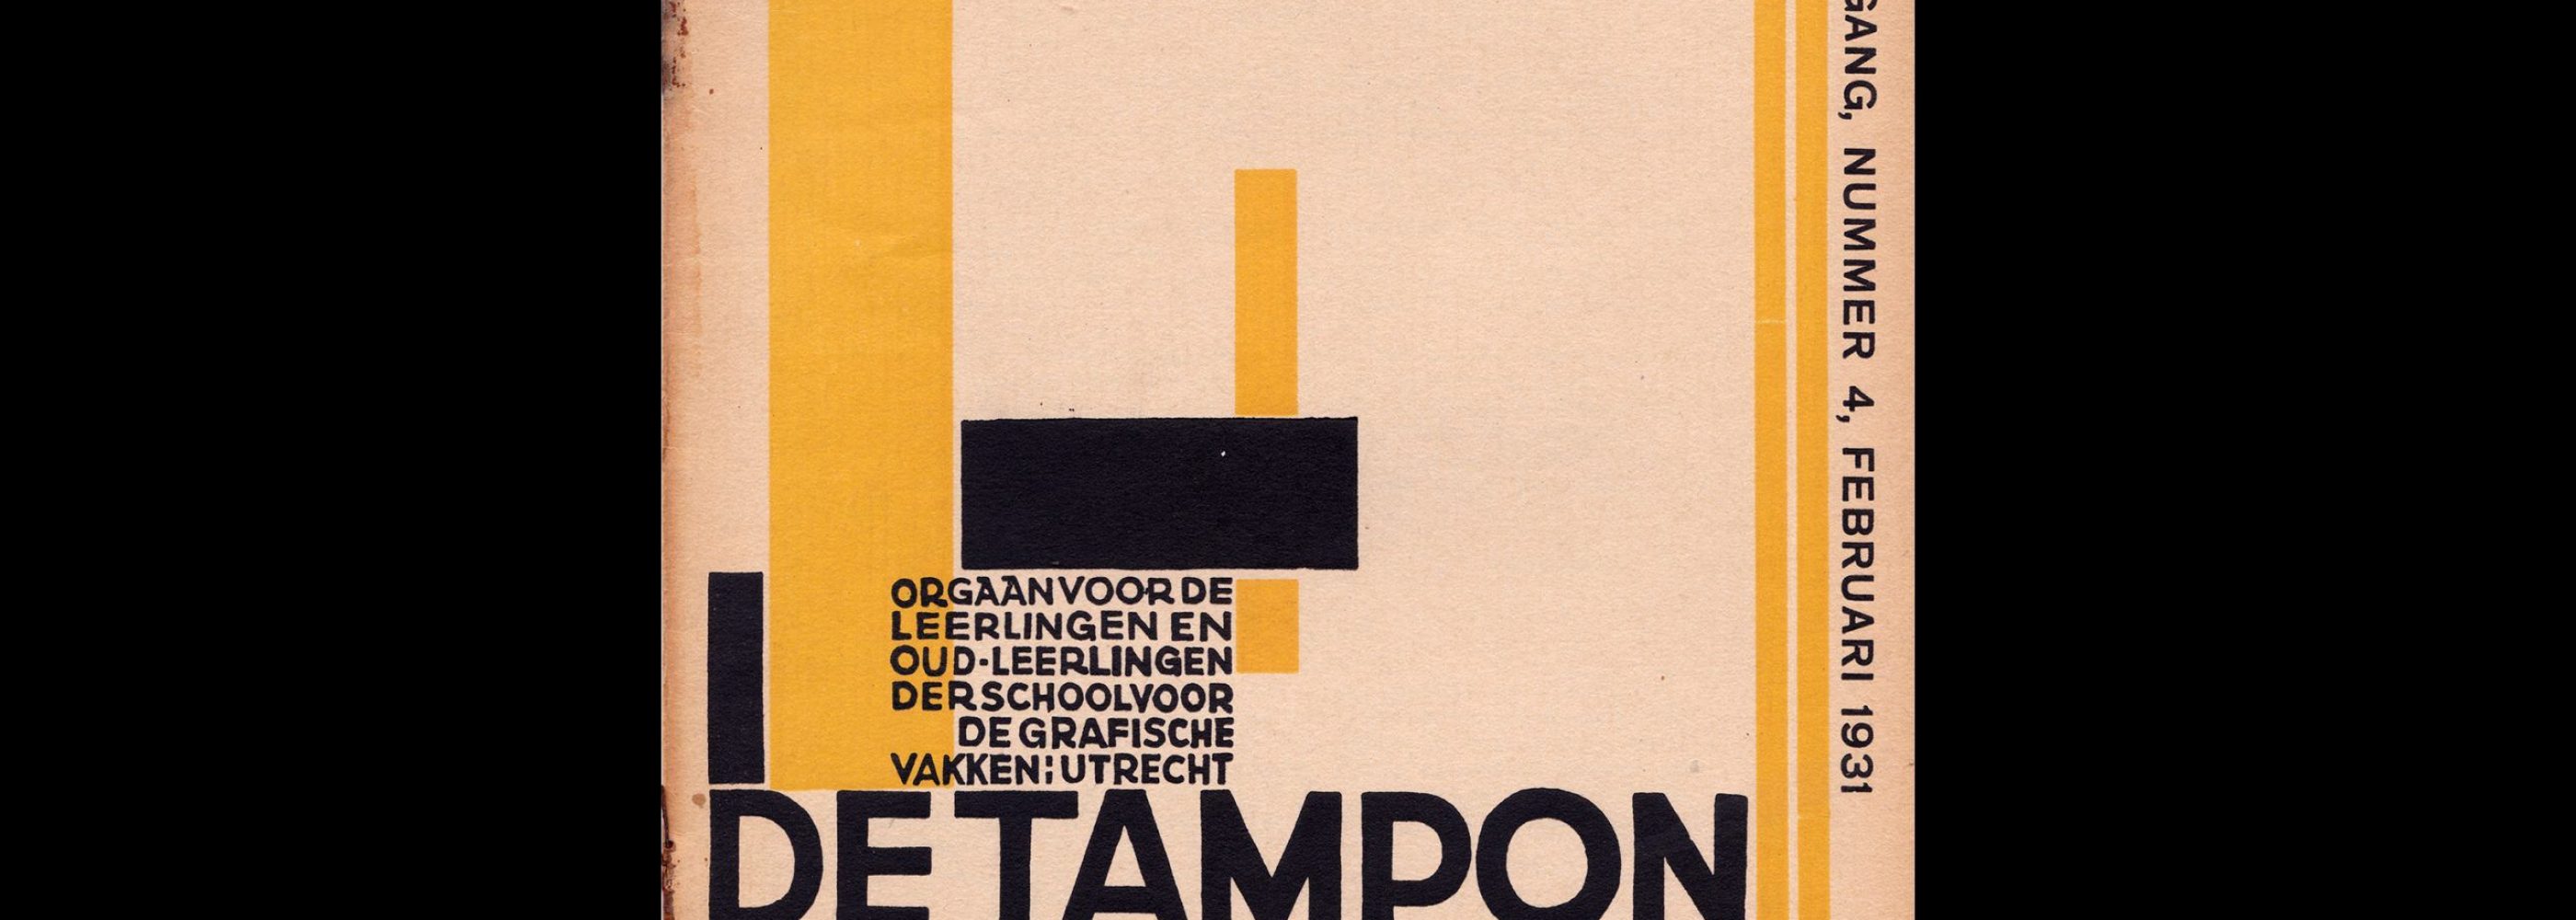 De Tampon, February 1931, School voor de Grafische Vakken, Utrecht